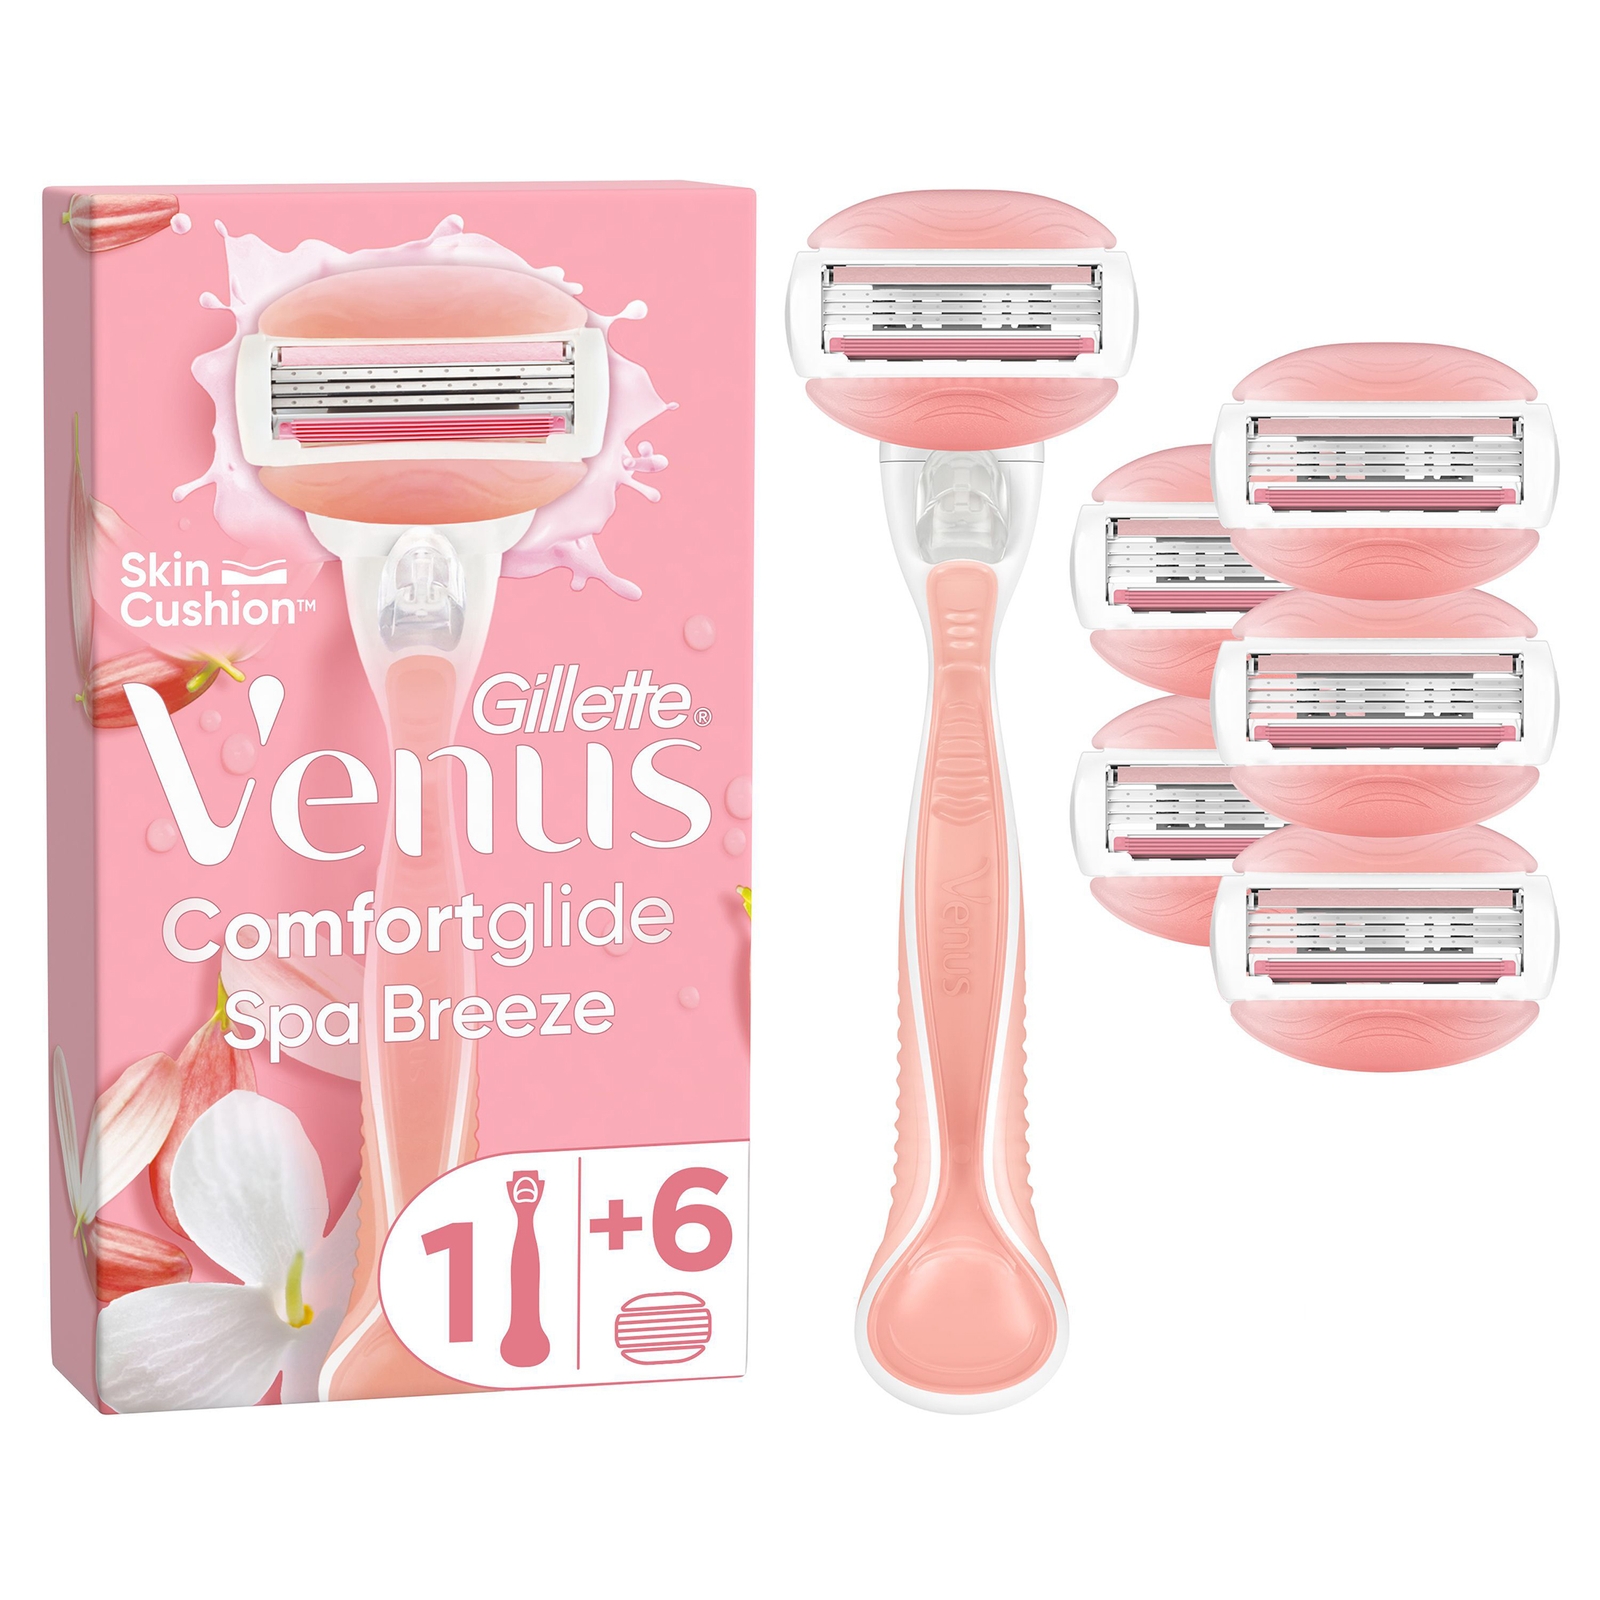 Venus Spa Breeze Value Pack